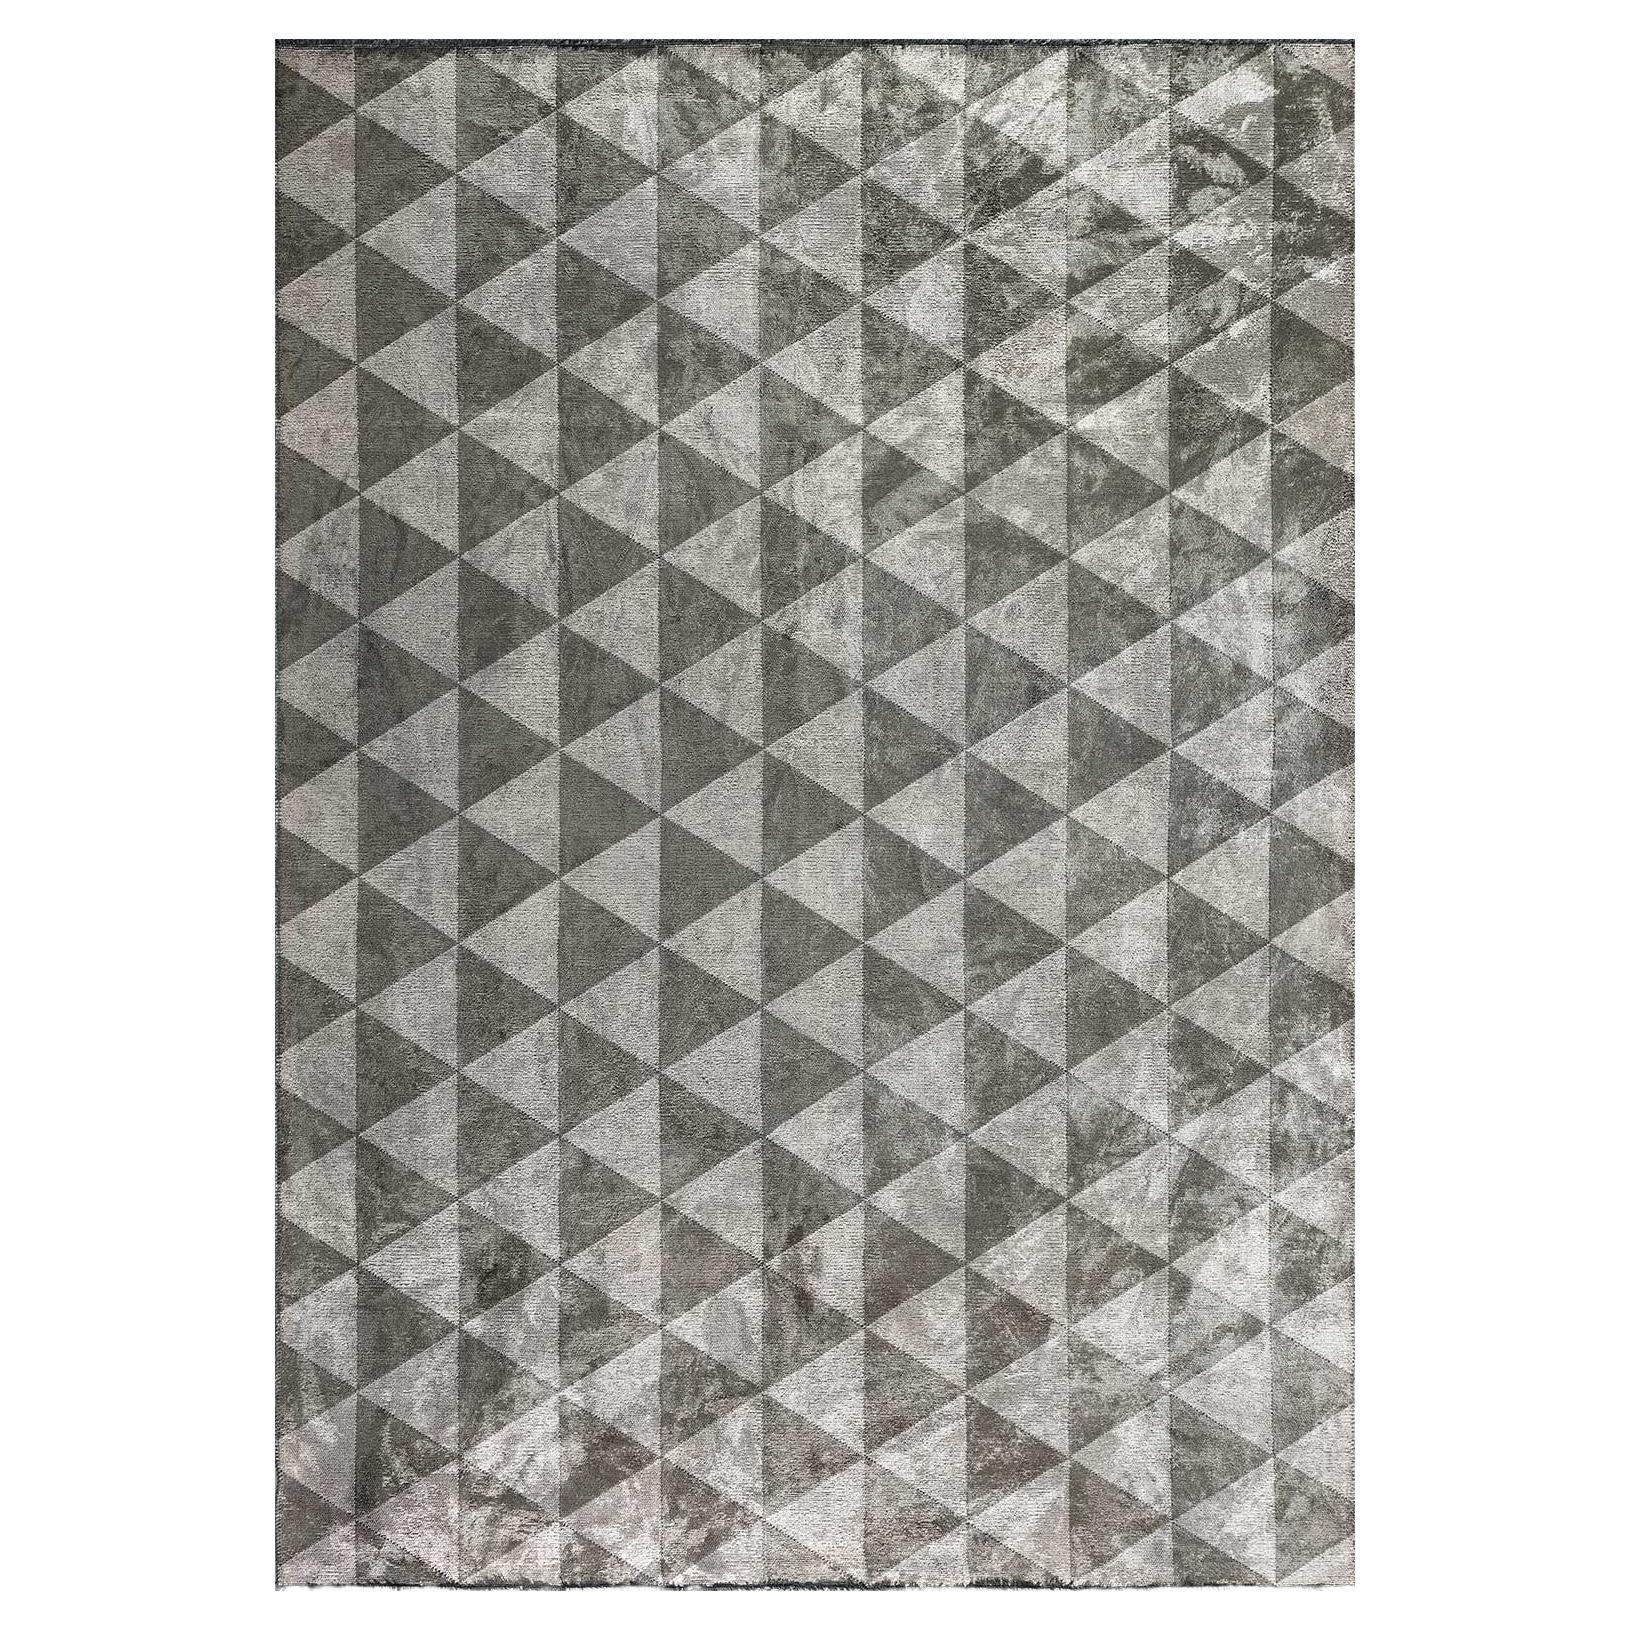 Silberner, grauer und khakibrauner dreieckiger Diamant-Teppich mit geometrischem Muster mit Glanz